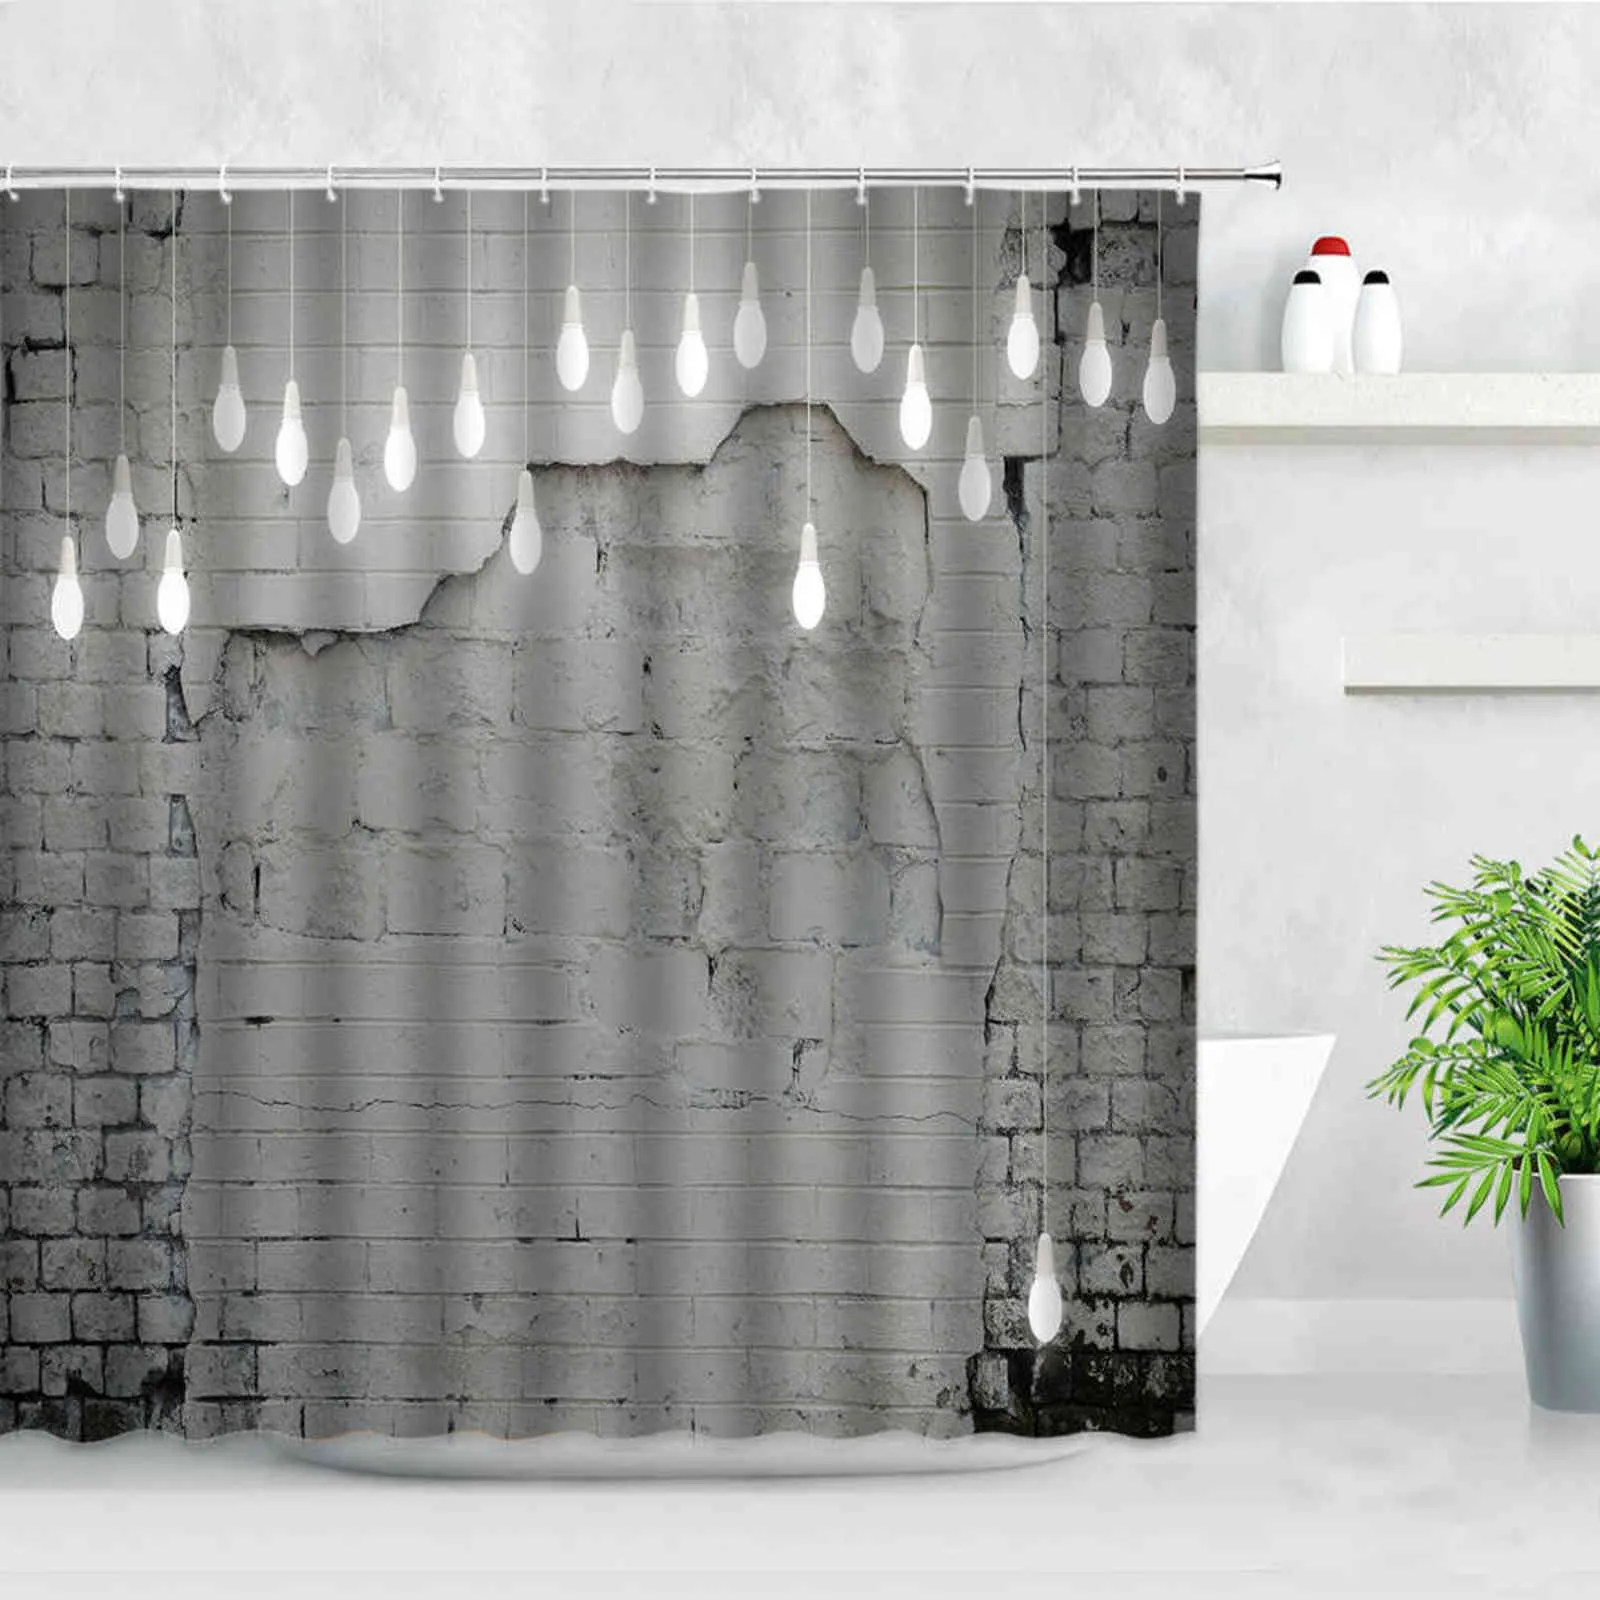 Ретро белый кирпич стены навесной для душа водонепроницаемый ткань ванны экраны старый бесшовные каменный светлый фон декор ванные комнаты занавески 21116